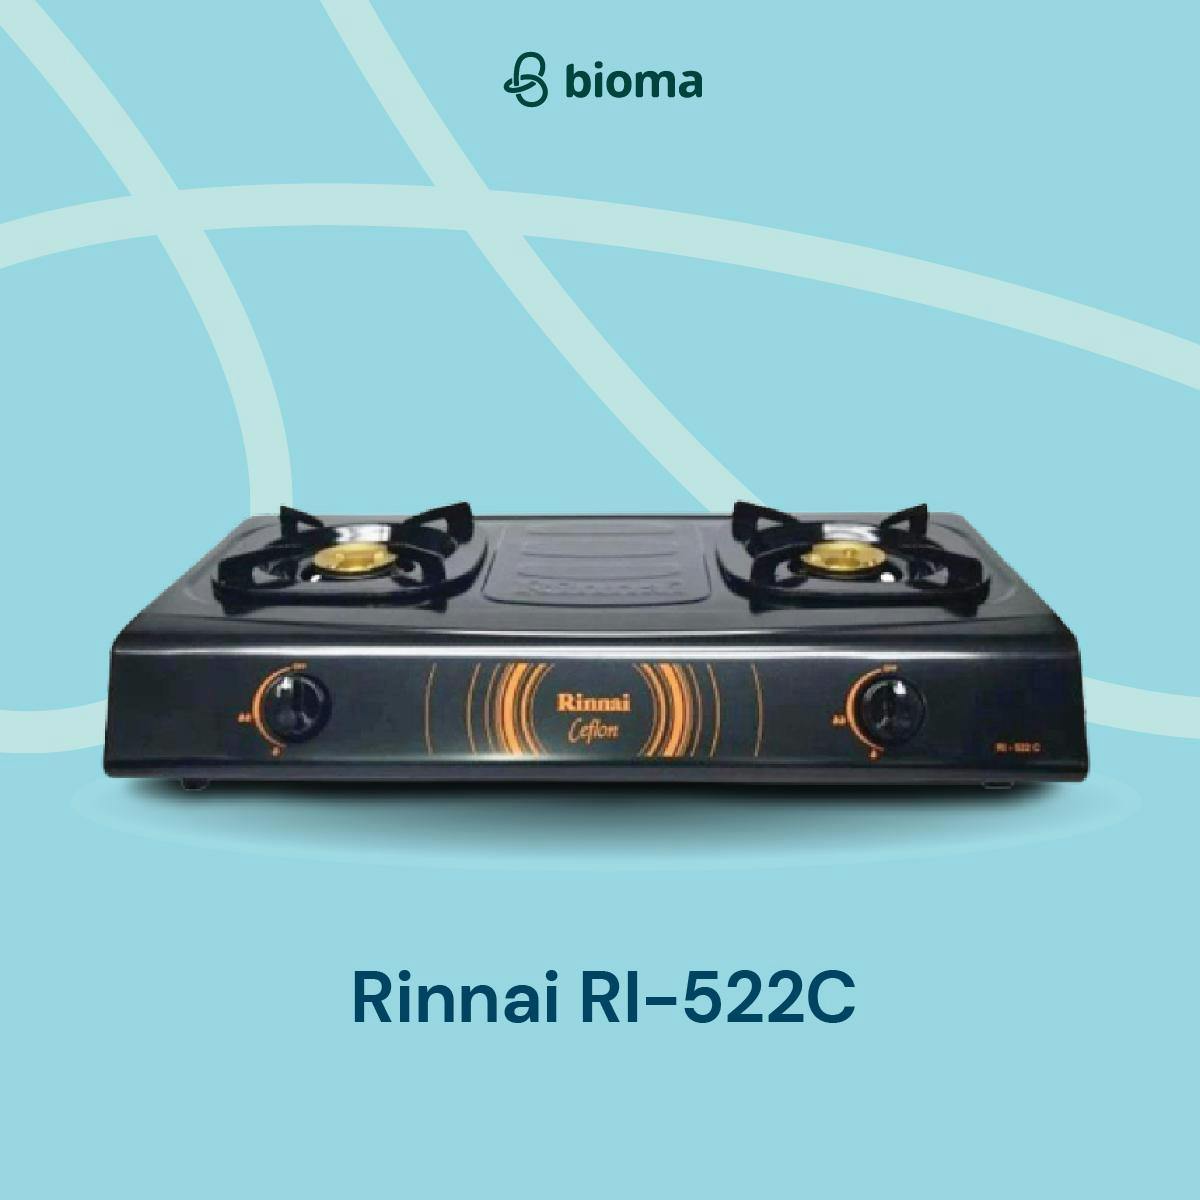 Rinnai RI-522C